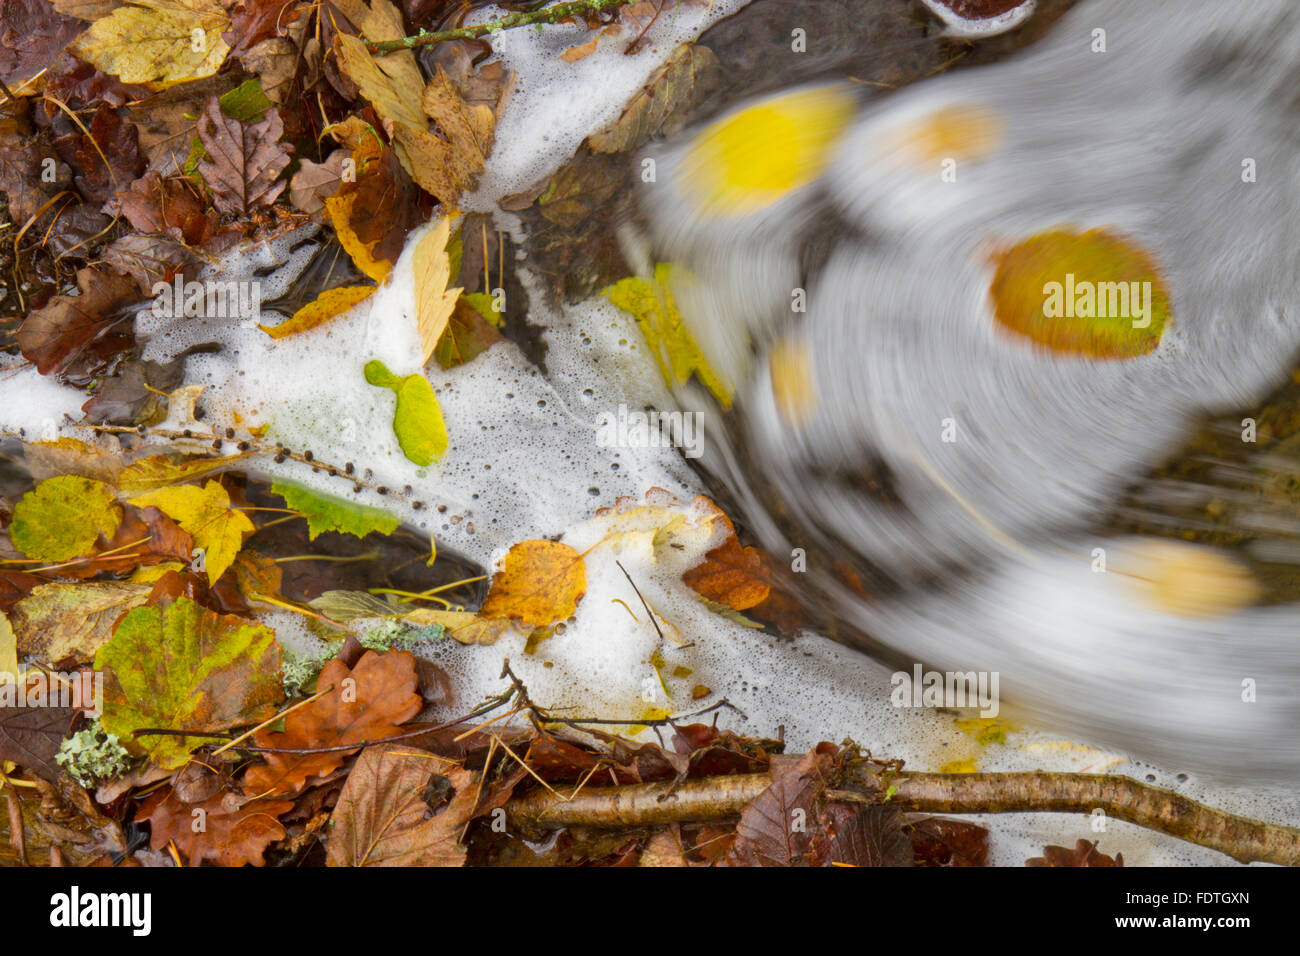 L'accumulation de feuilles mortes dans un ruisseau. Powys, Pays de Galles. Novembre. Banque D'Images